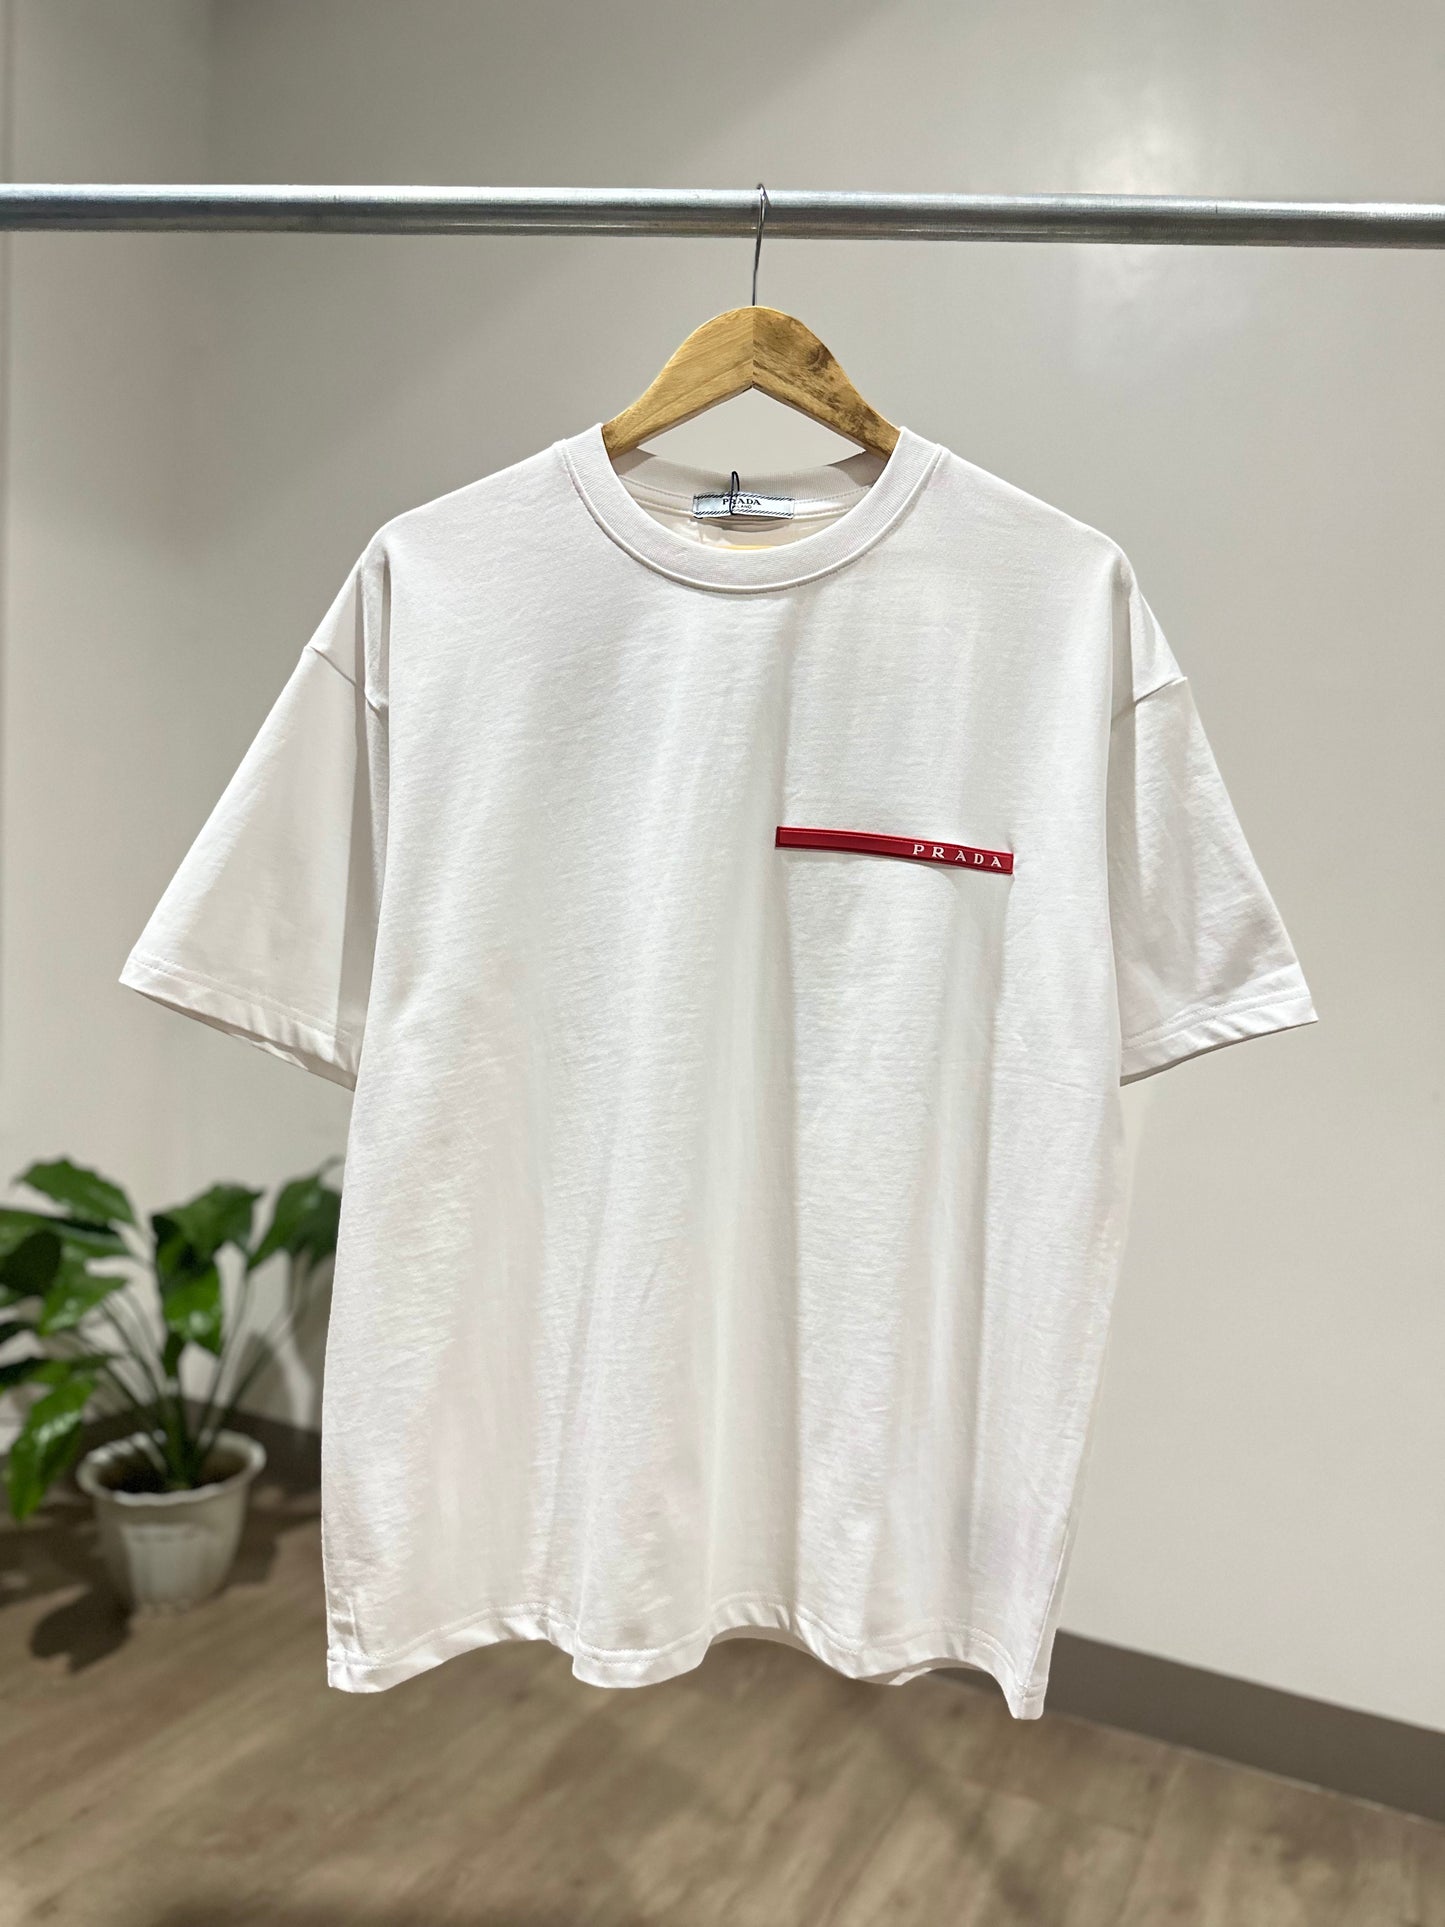 Prada - Luna Rossa T-Shirt (White)